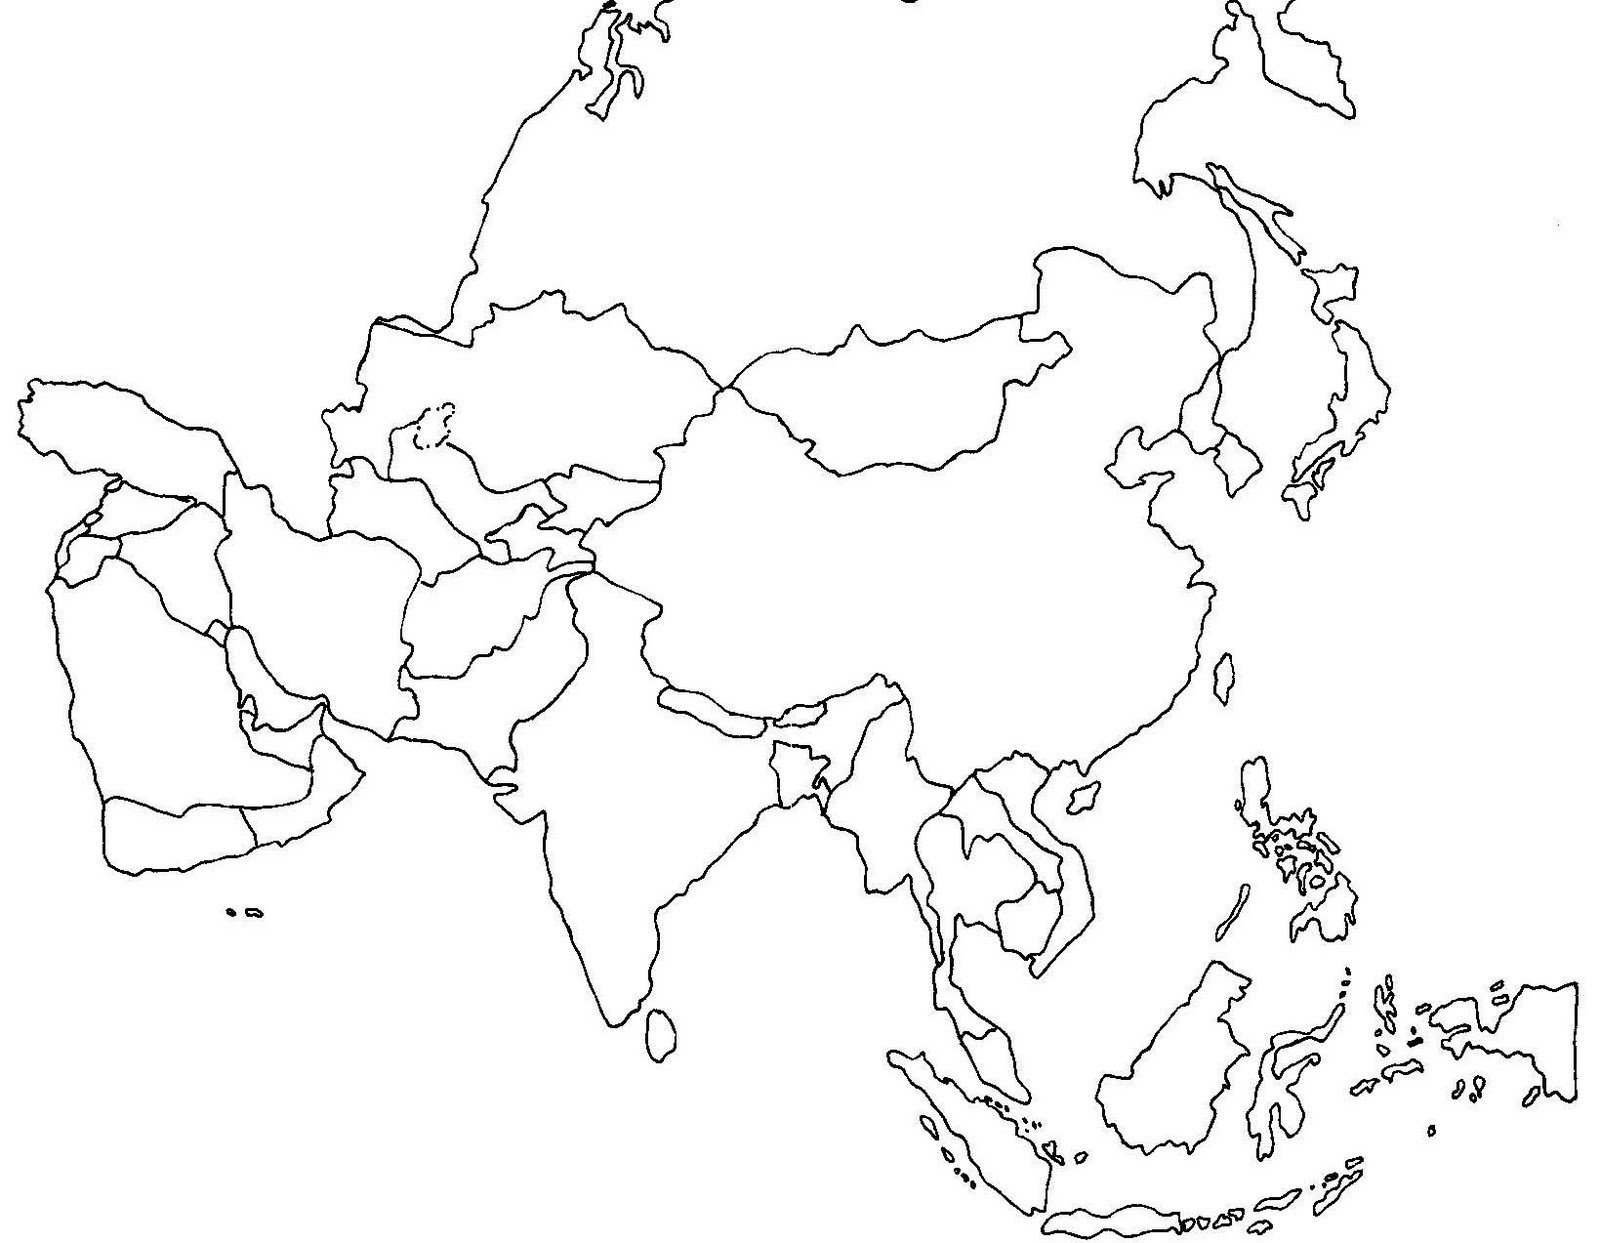 Пустая карта зарубежной Азии с границами государств. Политическая контурная карта Азии с границами государств. Зарубежная Азия политическая карта контурная карта. Азия контурная карта с границами стран.